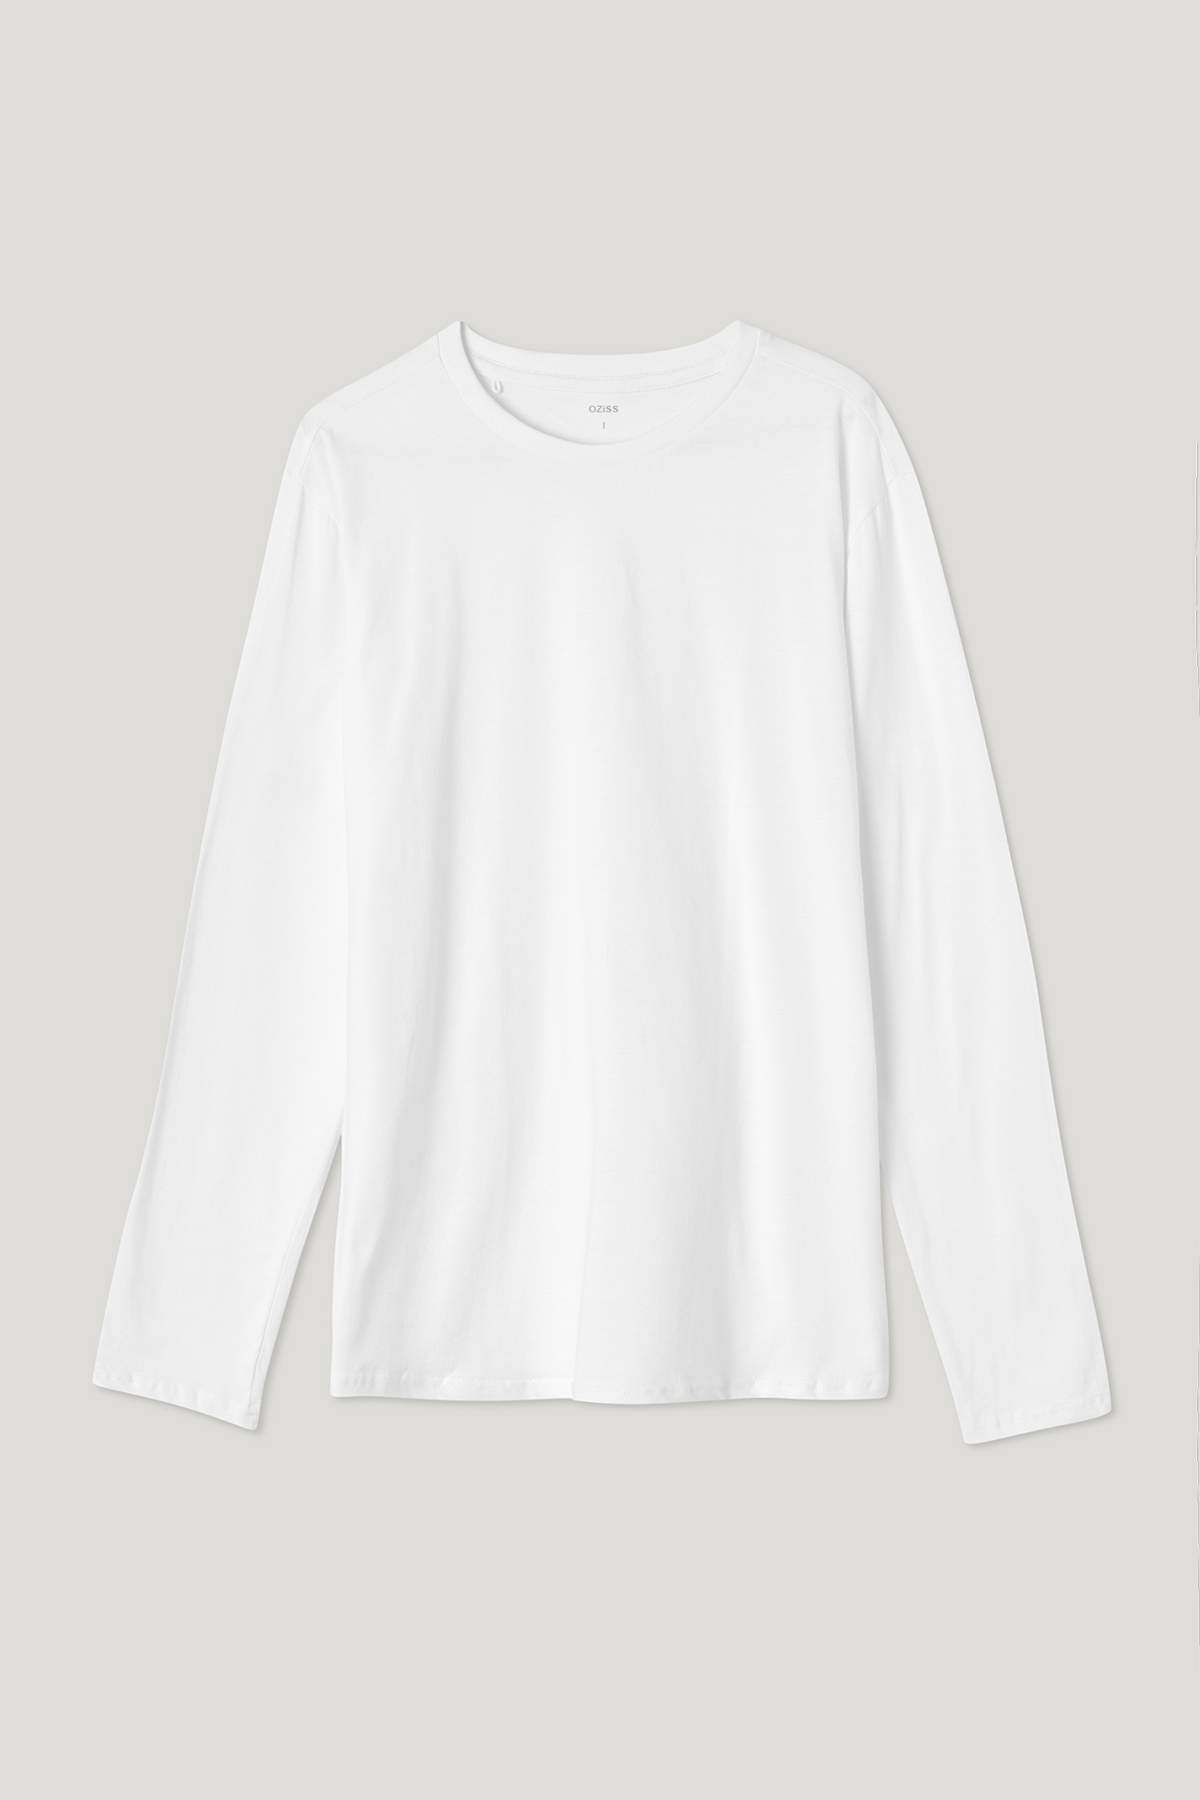 Full Sleeve Tee: Cloud White – OZiSS